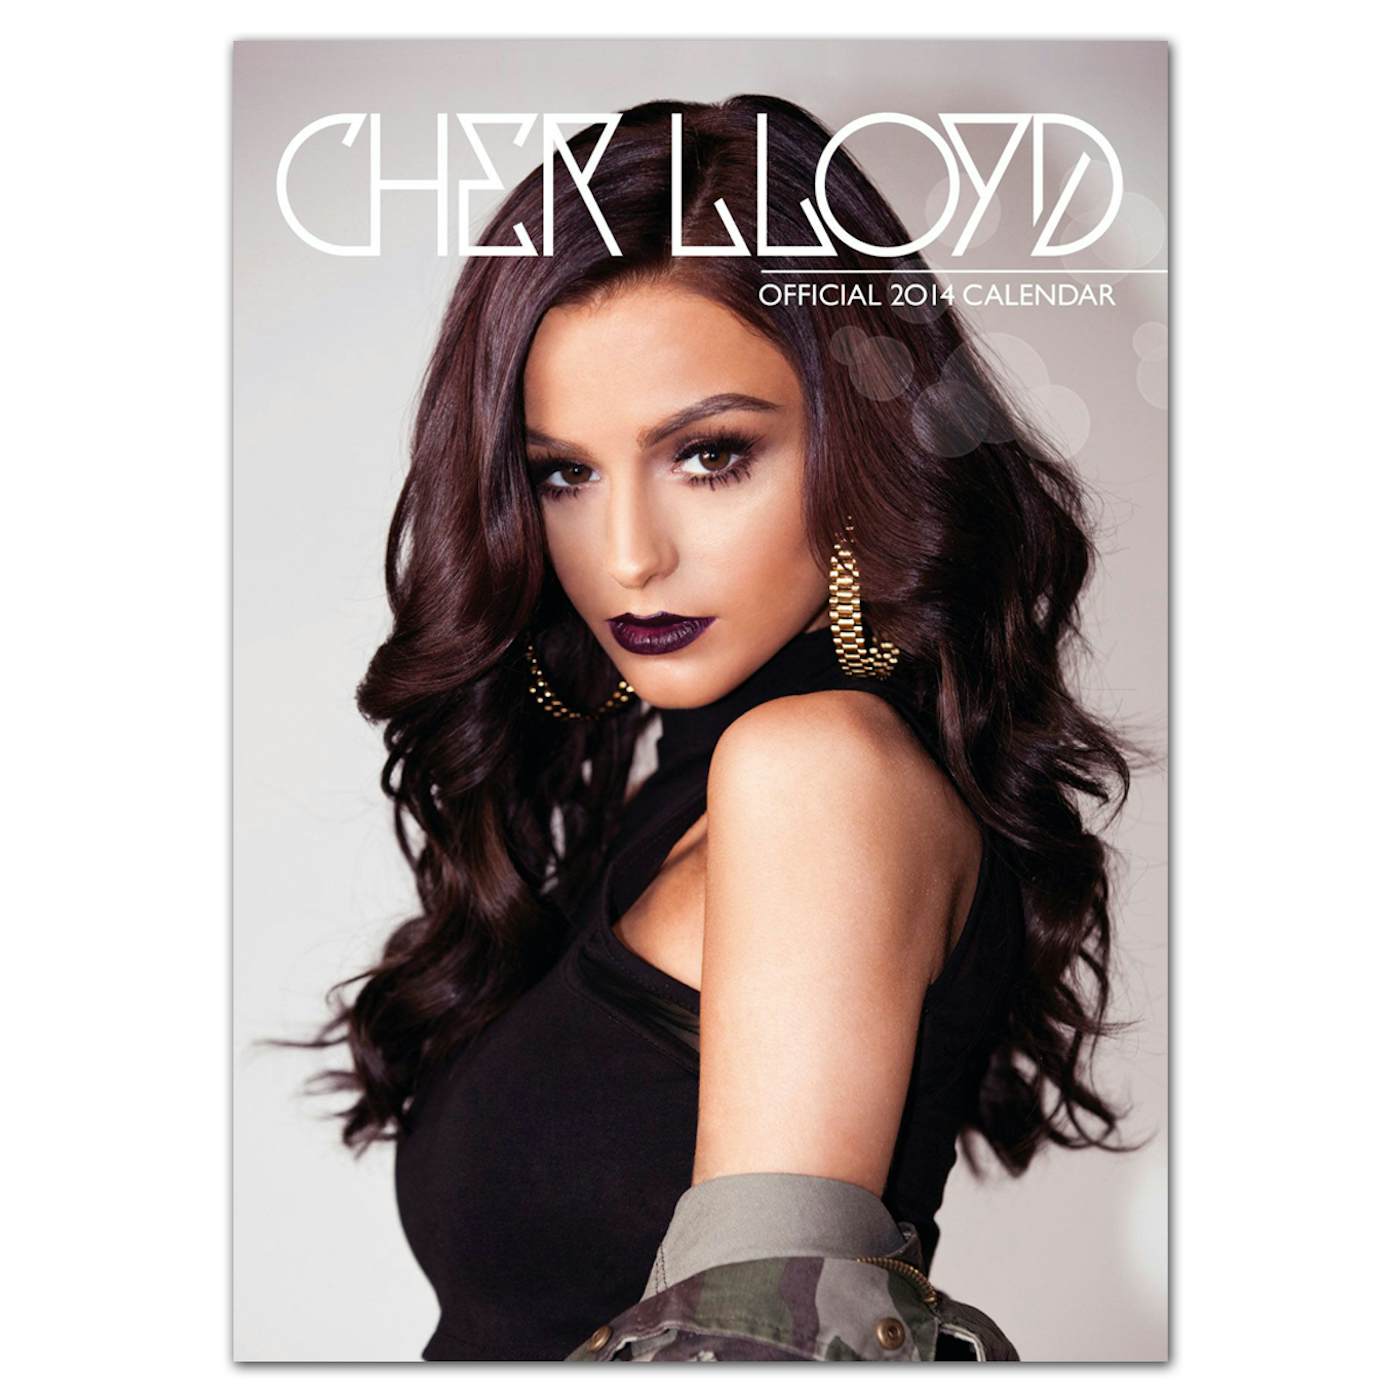 Cher Lloyd Official 2014 Calendar